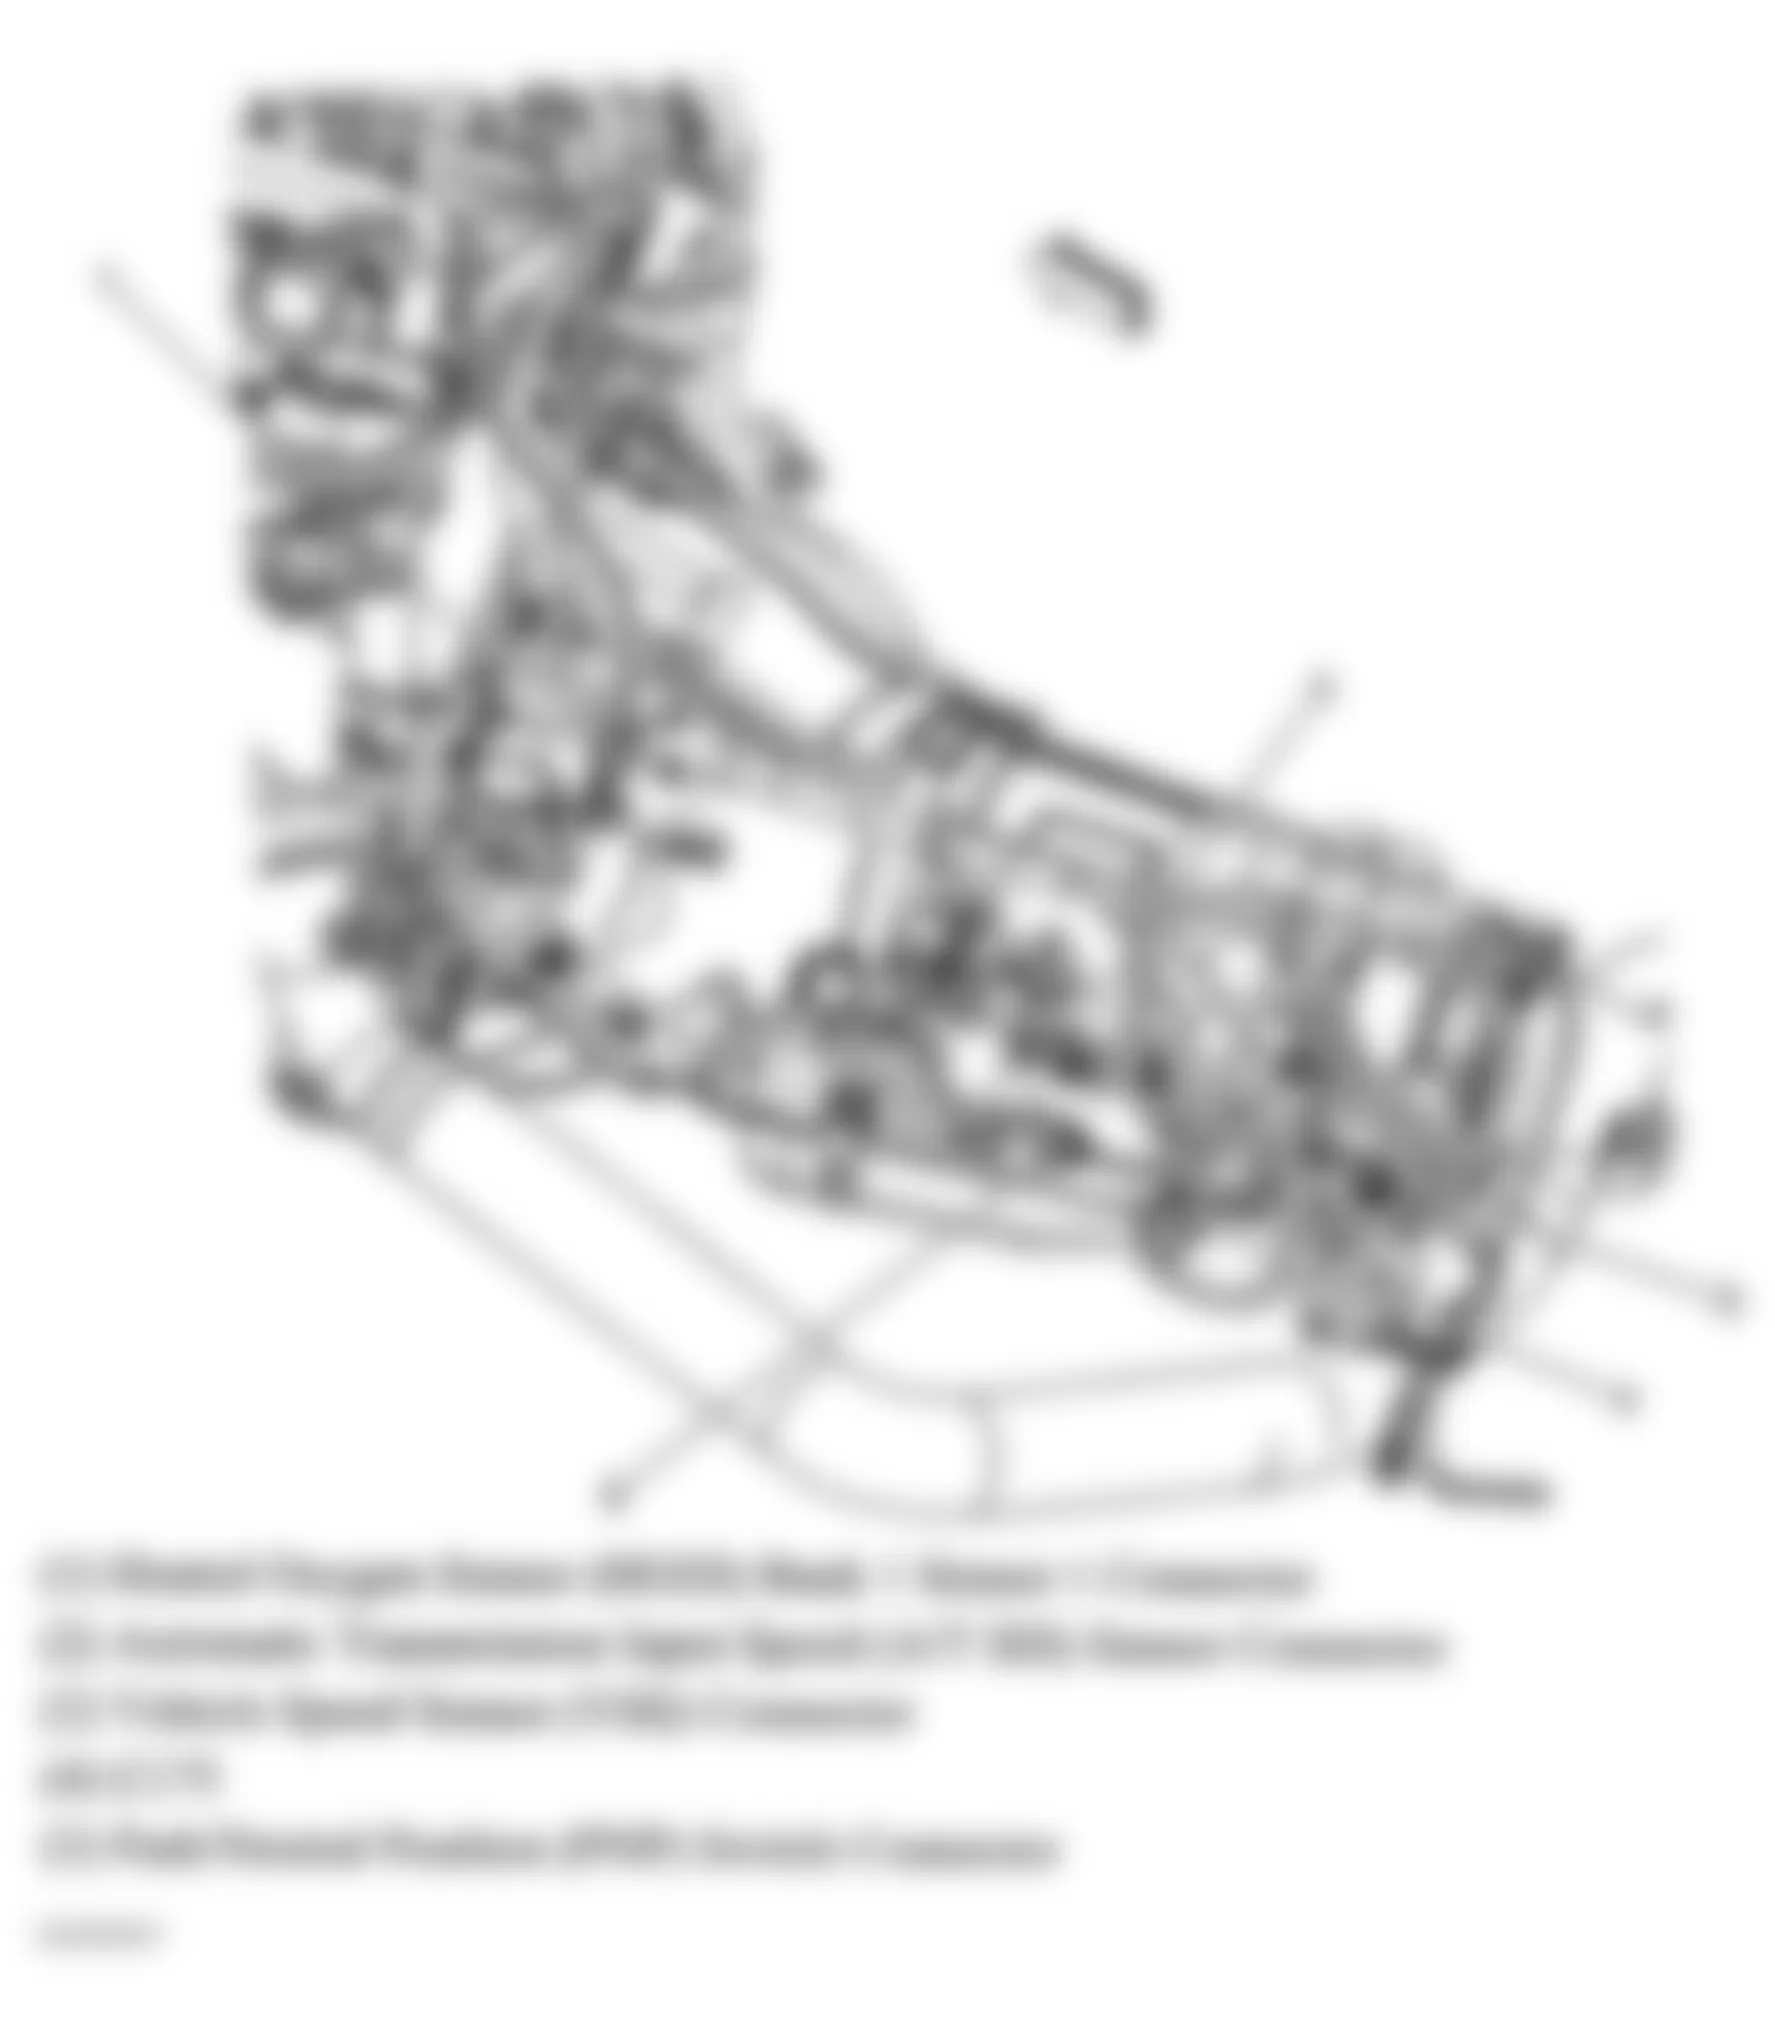 GMC Savana Camper Special G3500 2006 - Component Locations -  Rear Of Engine & Transmission (4.8L VIN V & 6.0L VIN U)